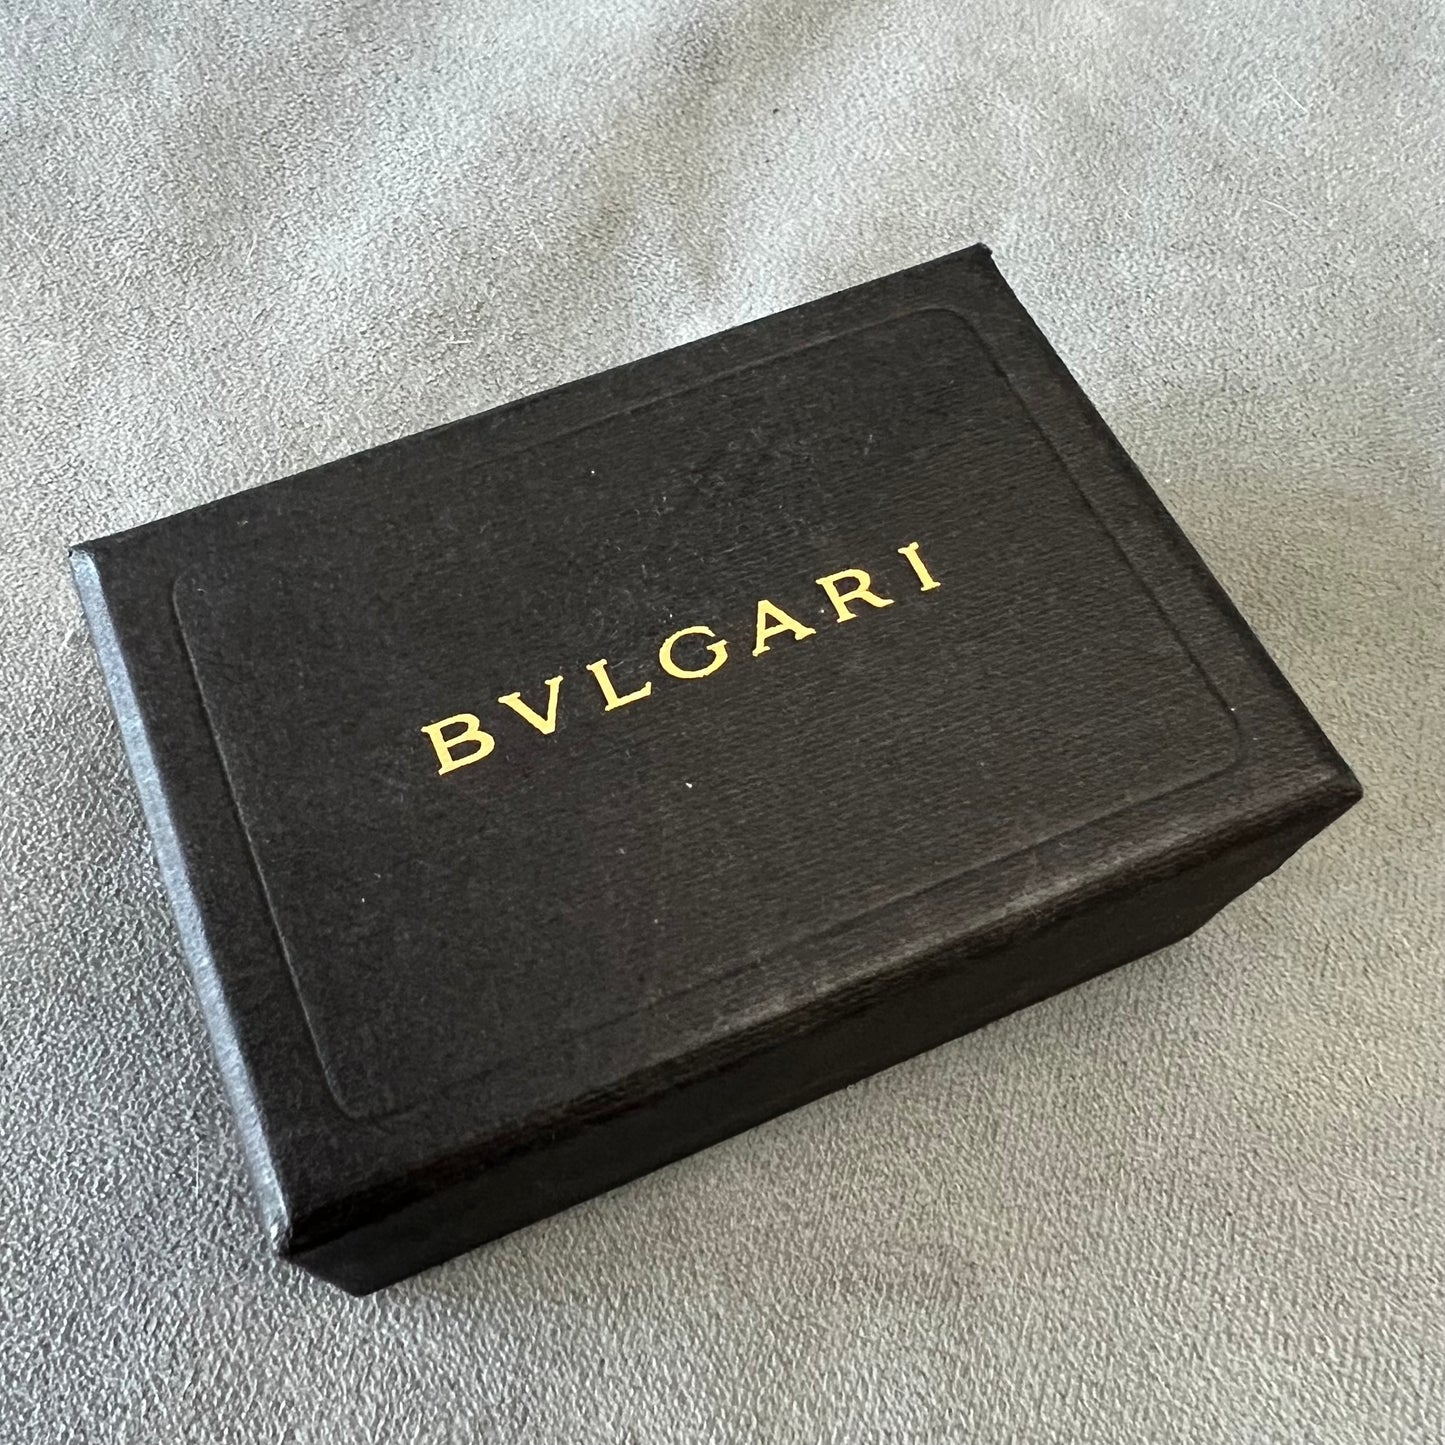 BULGARI Jewerly Box 3.30x2.25x1.50 inches